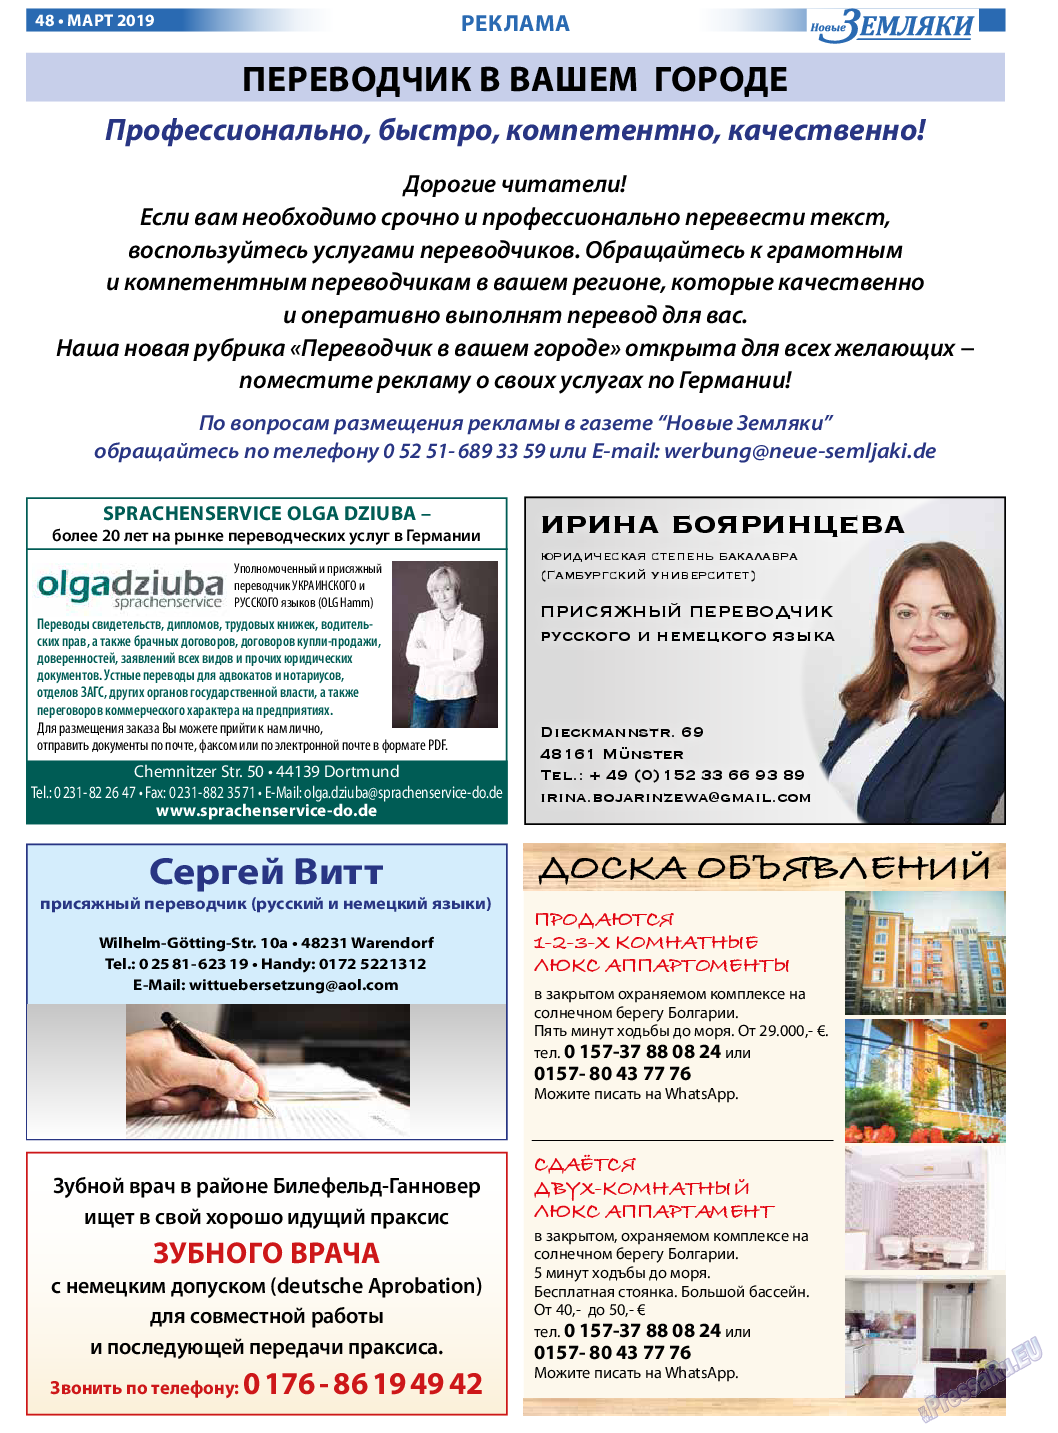 Новые Земляки, газета. 2019 №3 стр.48